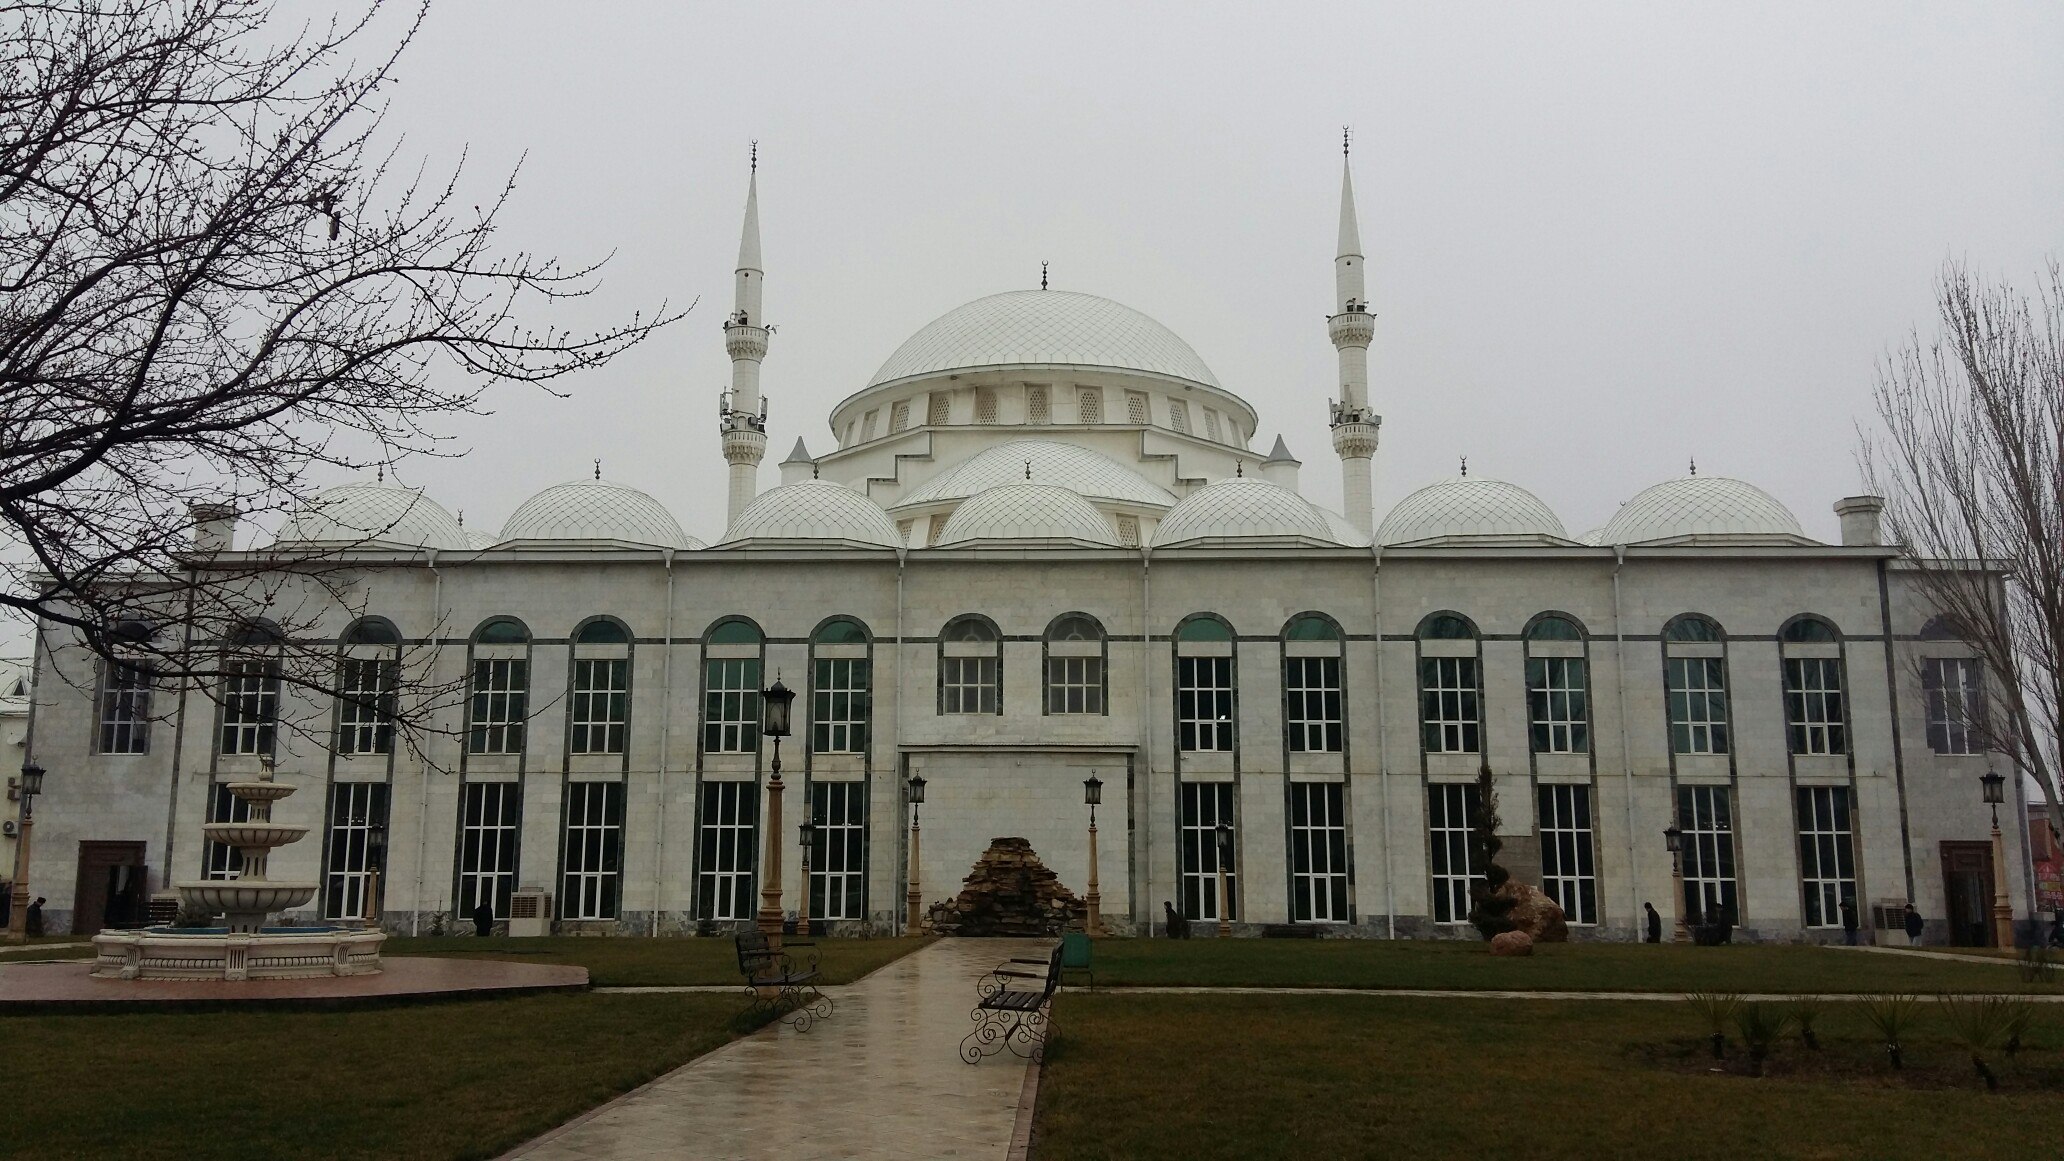 Мечеть в махачкале самая большая в европе фото